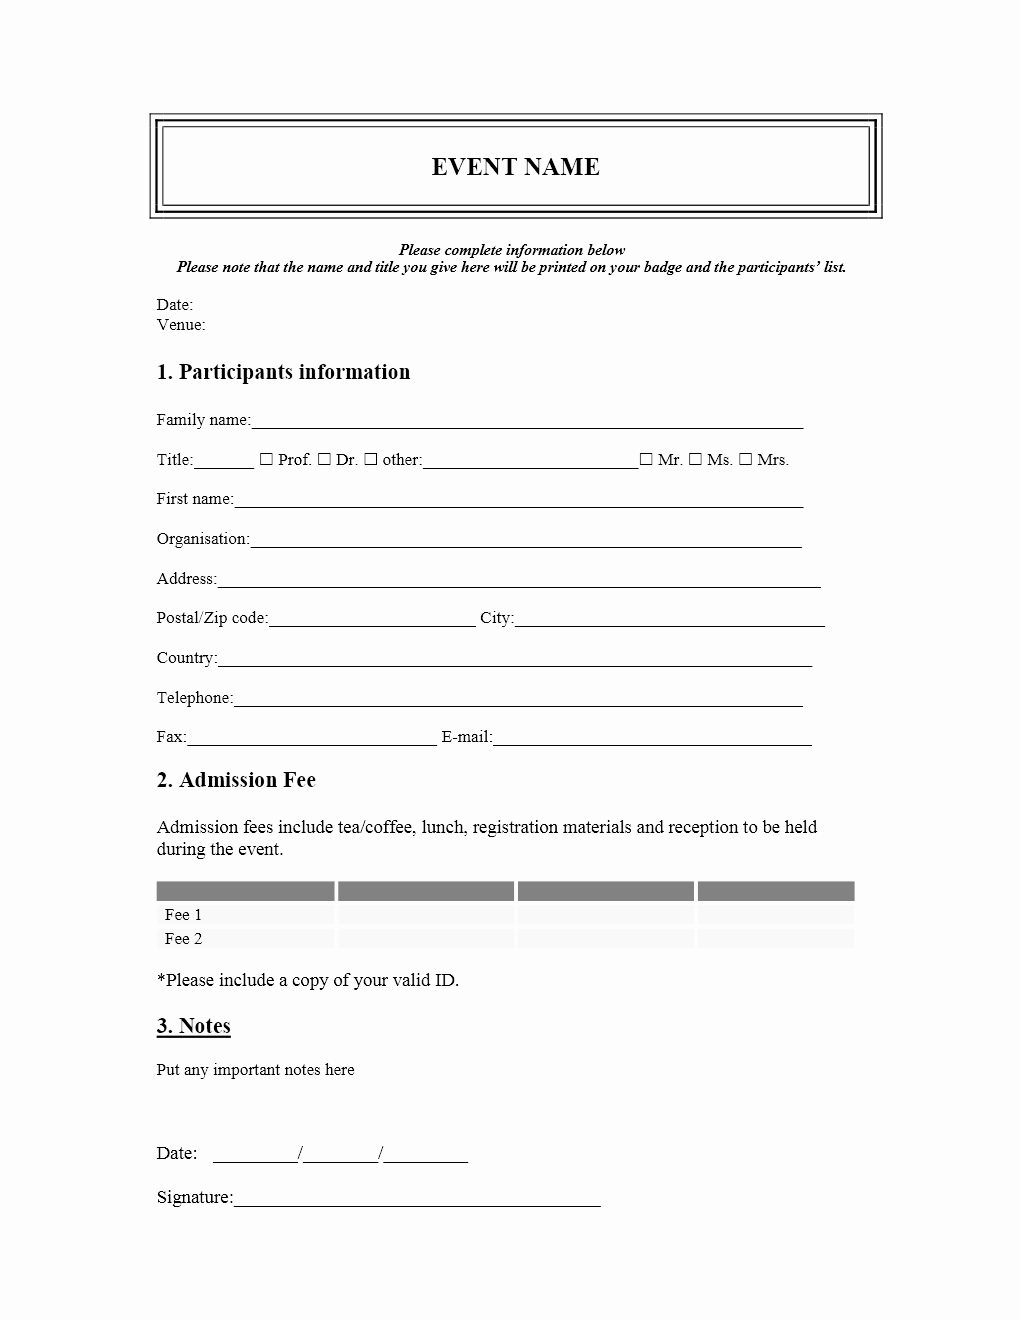 Conference Registration form Template Word Elegant event Registration form